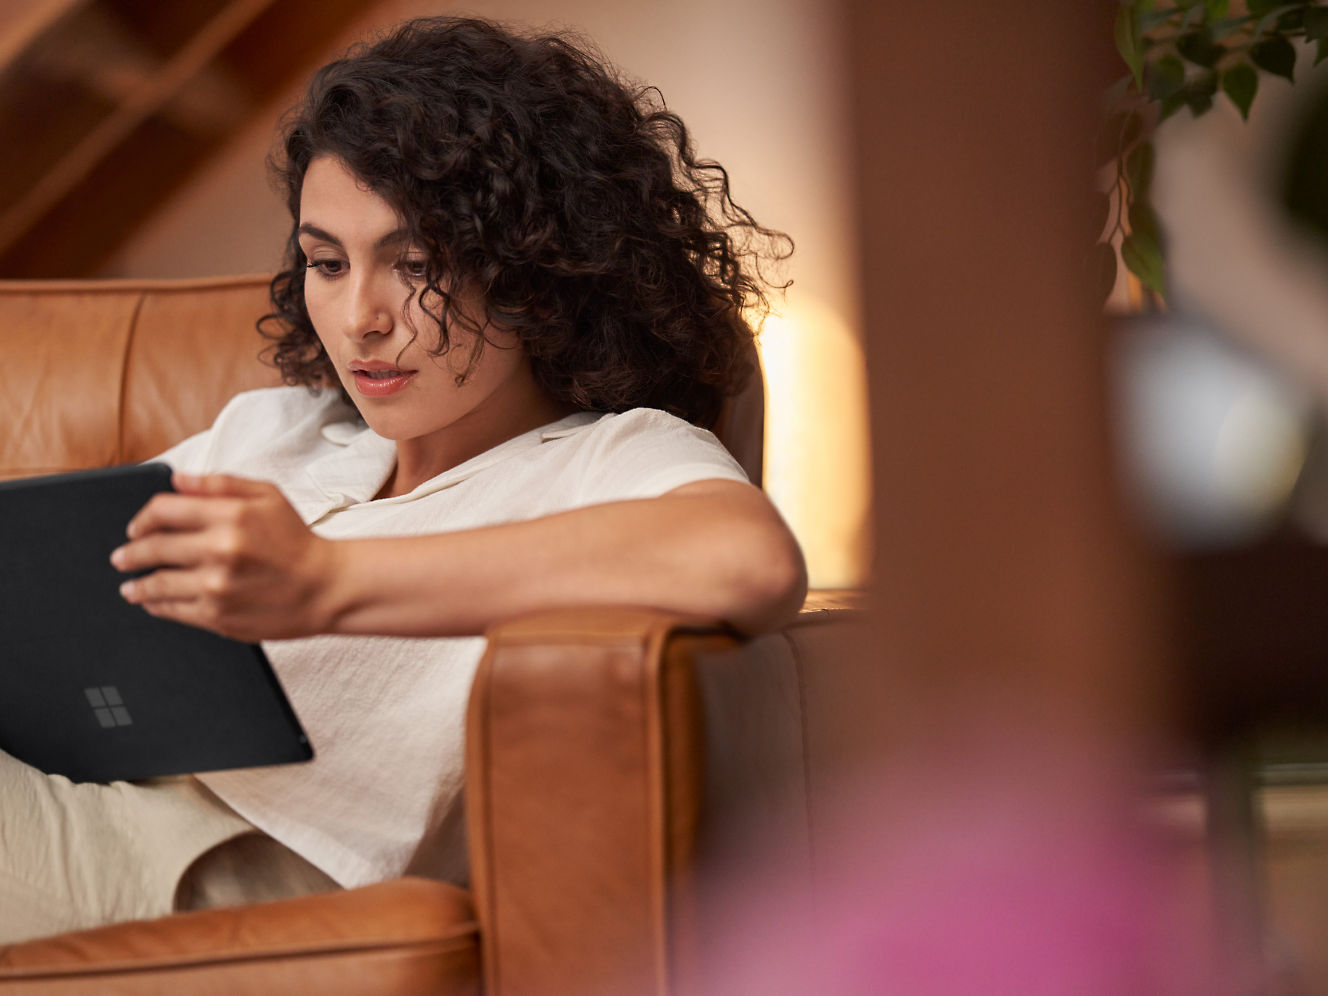 En kvinde med krøllet hår læser fokuseret på en tablet, mens hun sidder i en brun lænestol indendørs.